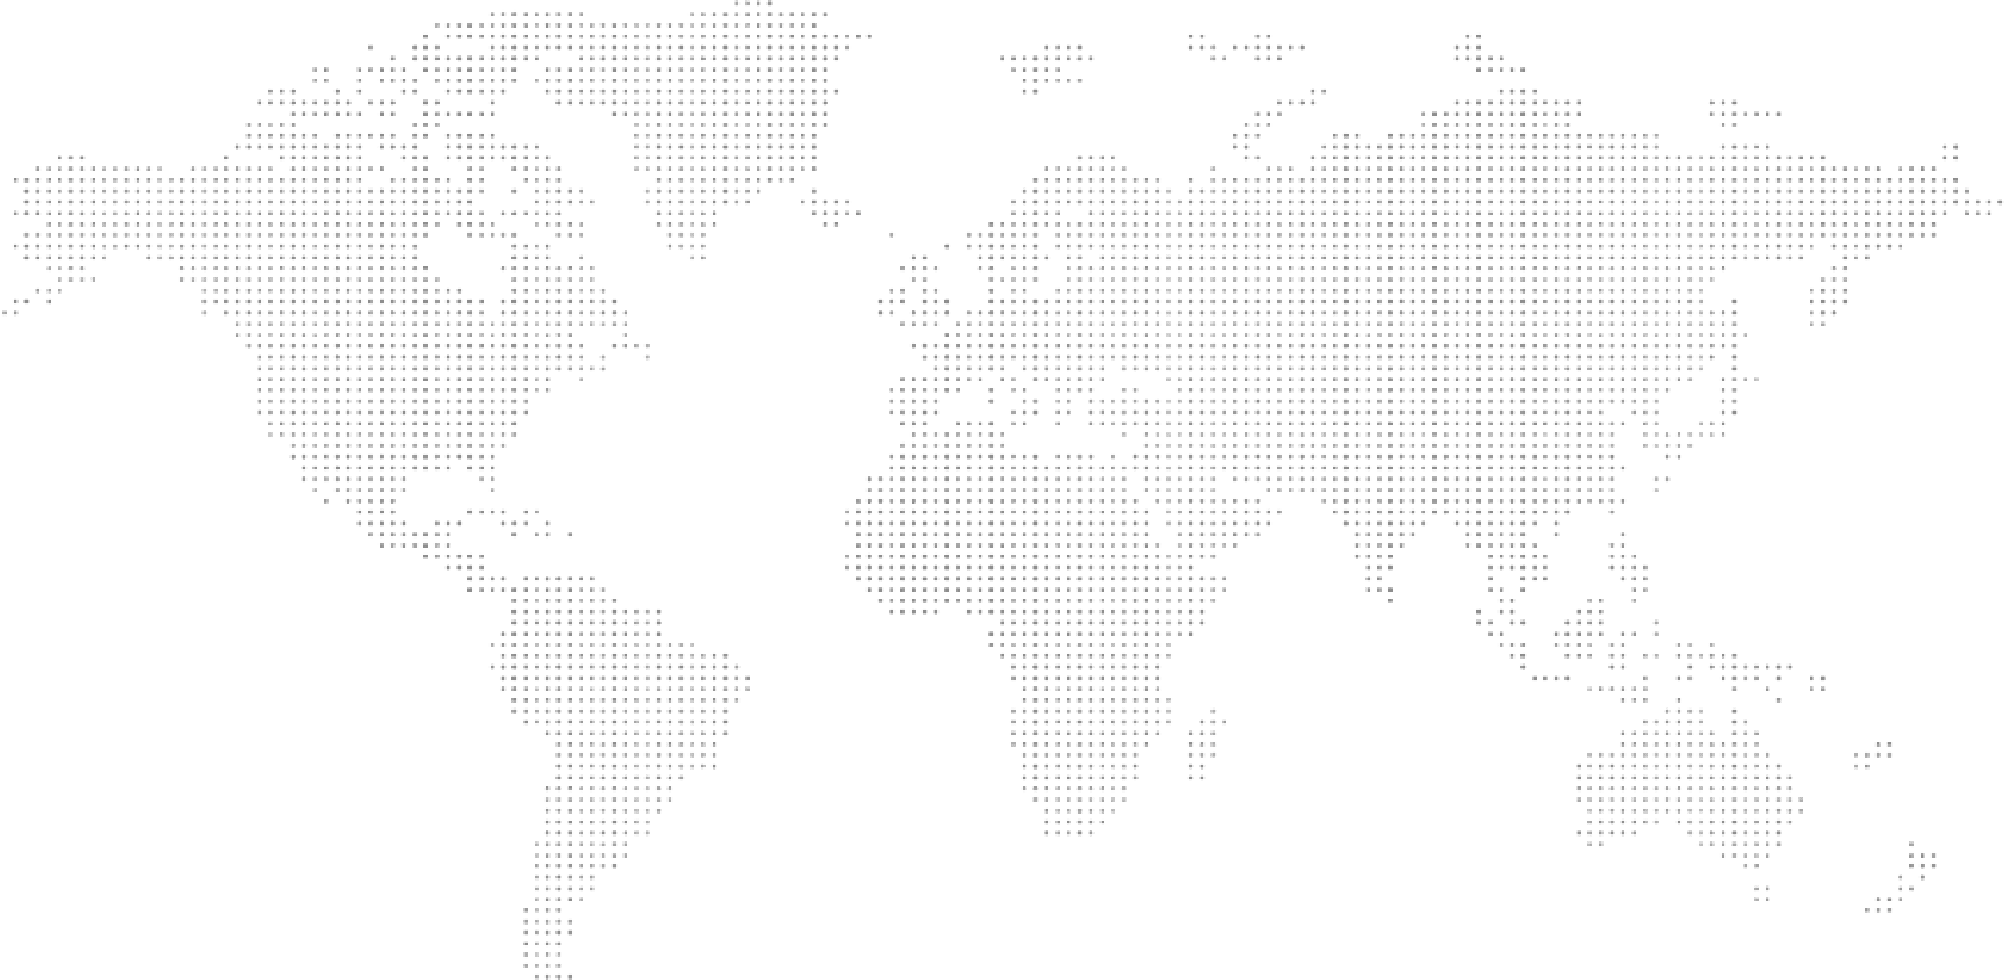 an ASCII art representation of the world map